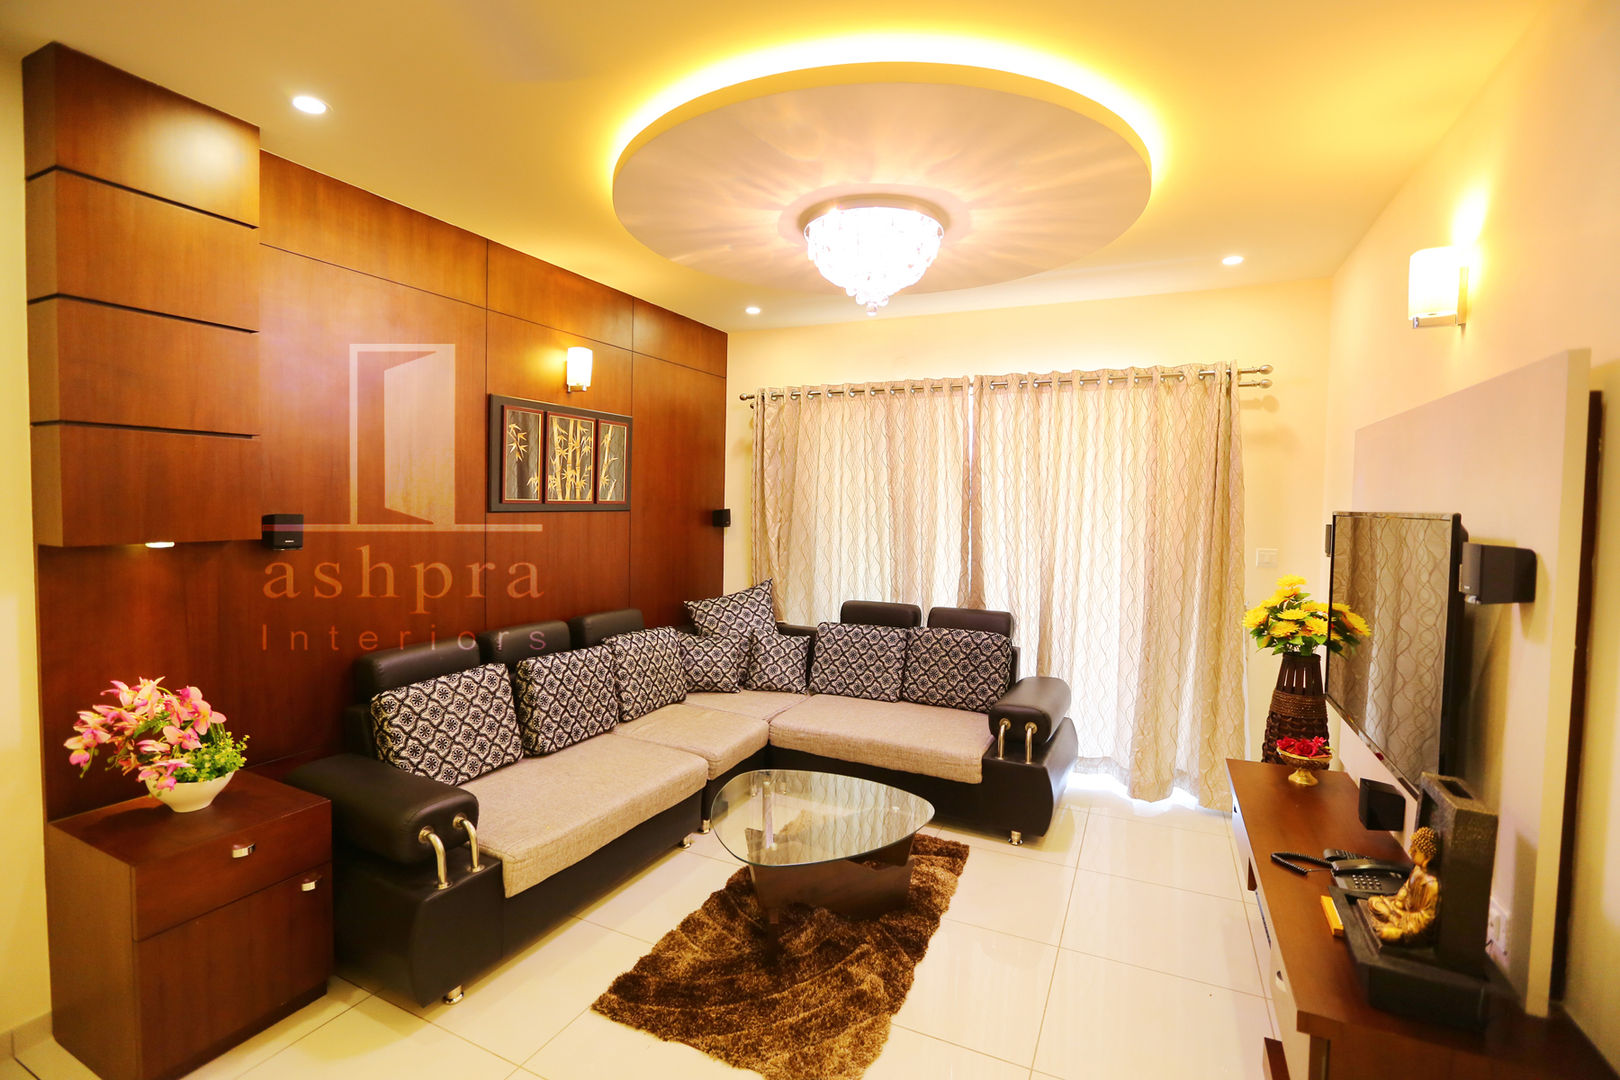 Interior work for a 2 bedroom apartment @ Mangalore.., Ashpra interiors Ashpra interiors Salas de estar asiáticas Sofás e divãs